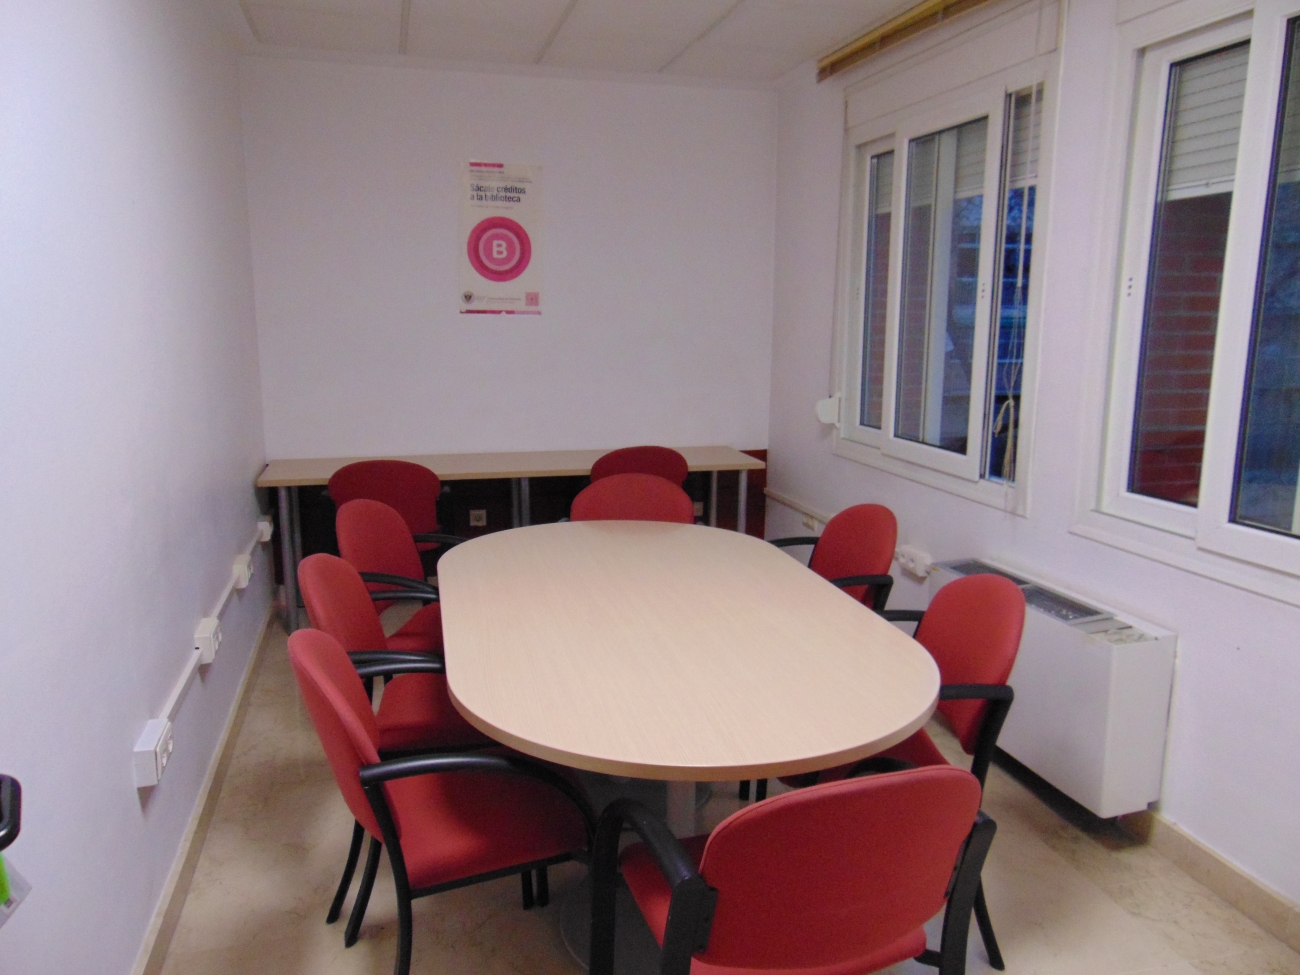 Foto con mesa y sillas de la sala para trabajo en grupo de la biblioteca